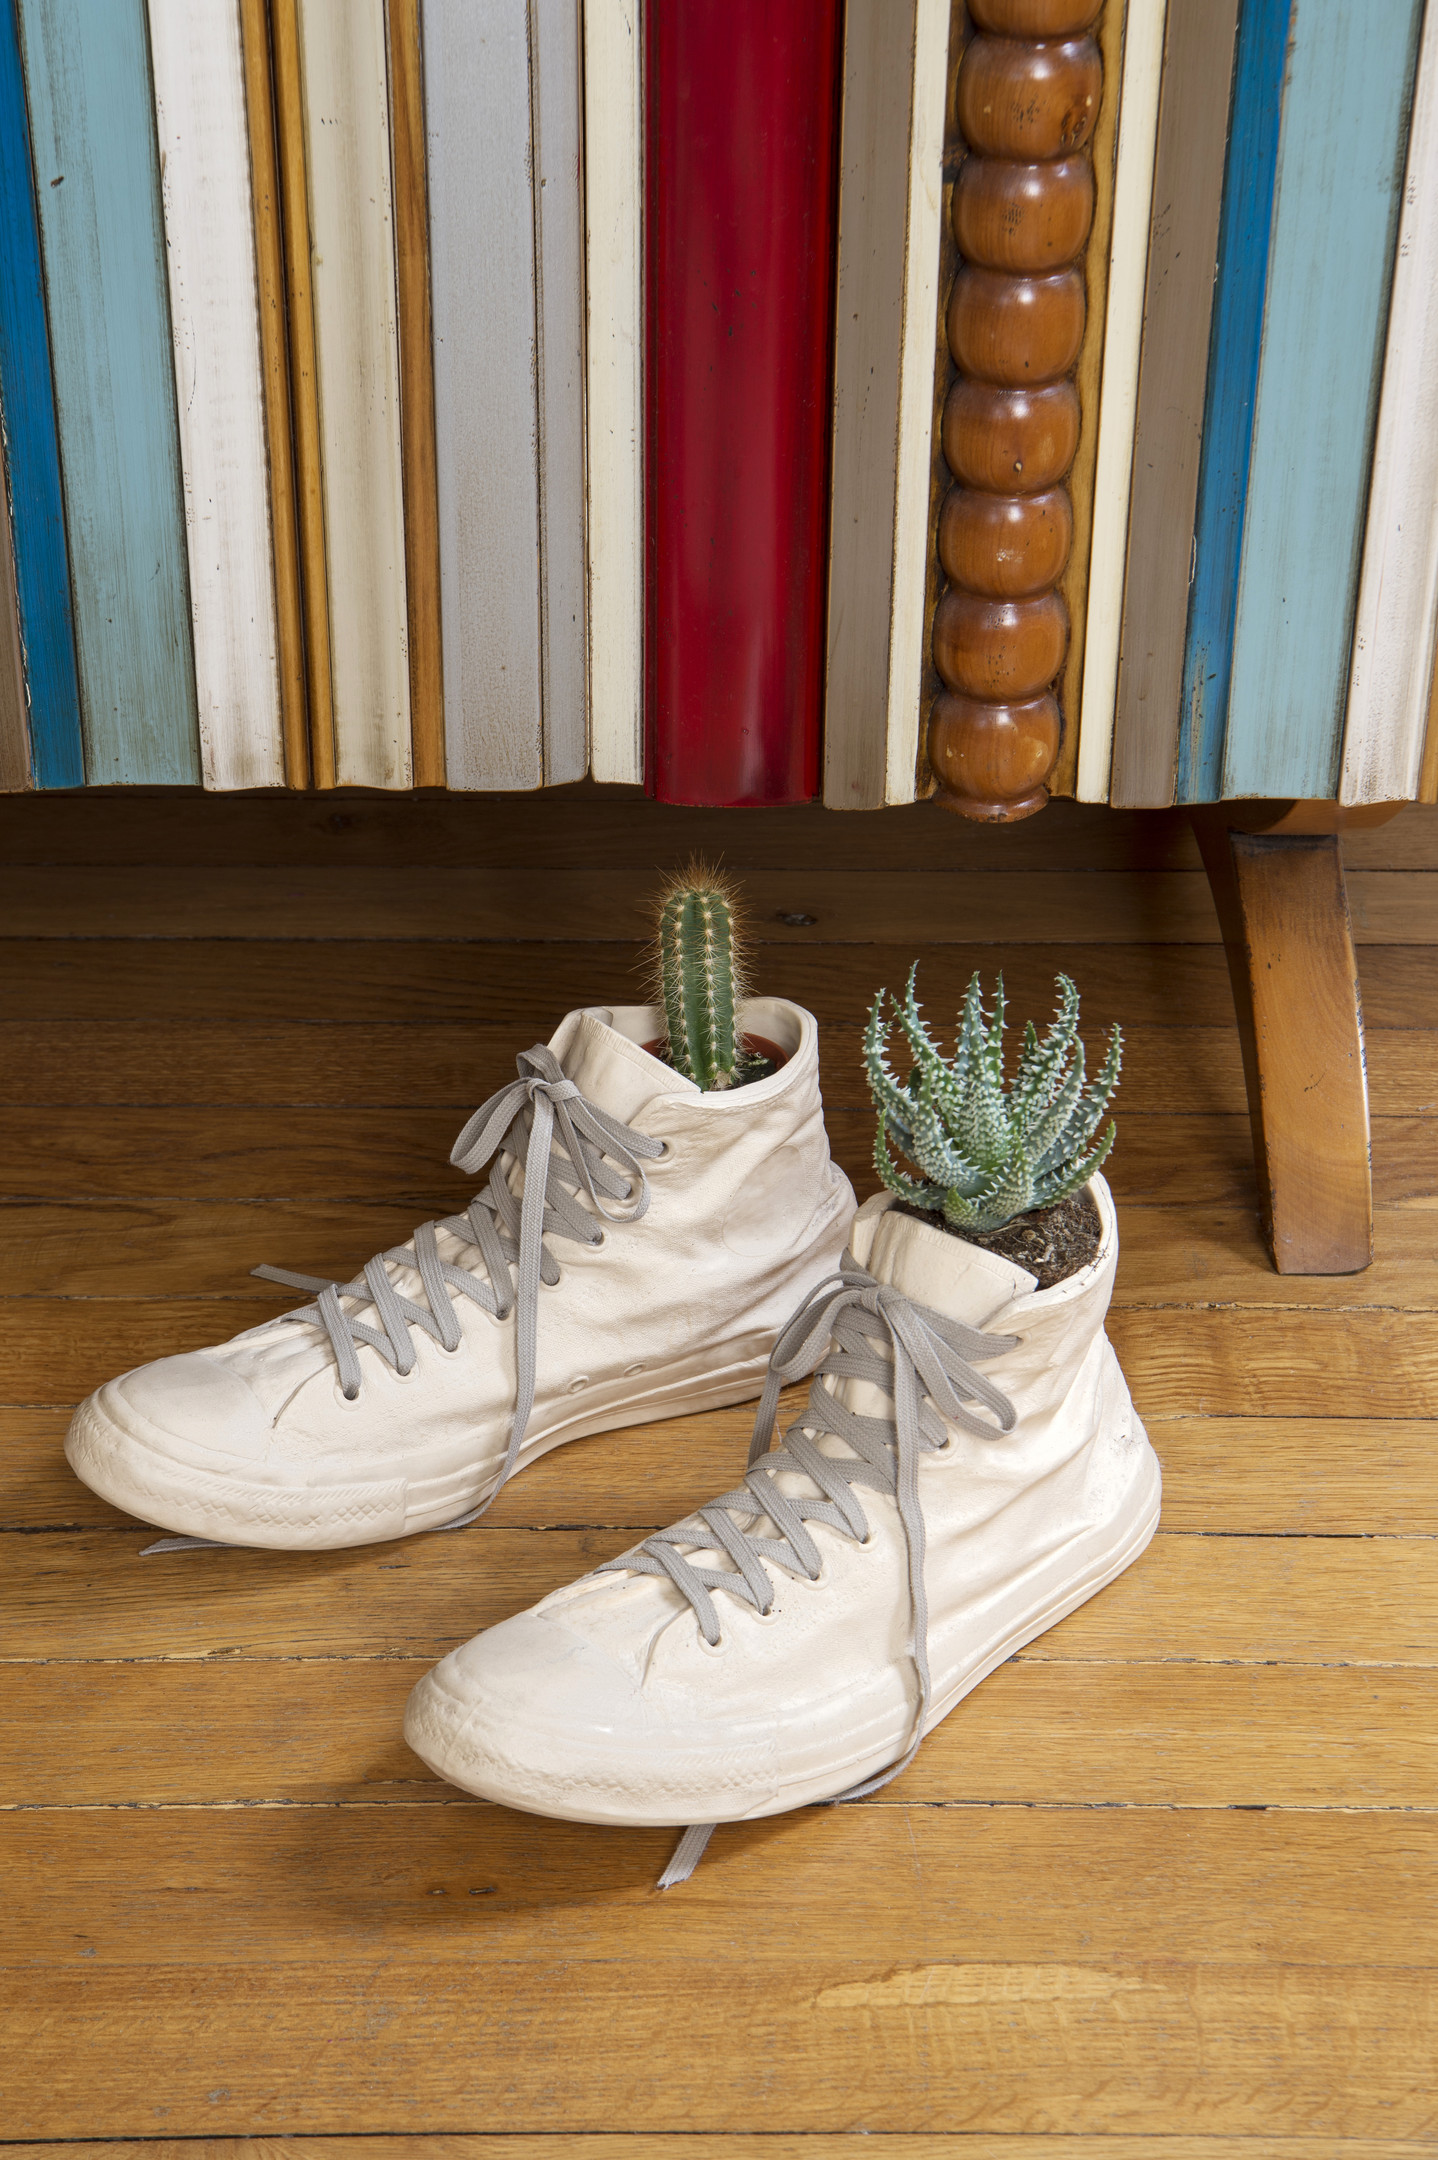 KTS Ilya Sologubovsky là người thích sưu tầm những món đồ độc lạ, từ phong cách cổ điển cho đến hiện đại. Thoạt nhìn, bạn sẽ nghĩ đây là đôi giày thể thao được tái sử dụng thành chậu cây? Thật ra, nó chính là một tác phẩm bằng gốm do chủ nhân tìm thấy tại triển lãm Maison & Objet.